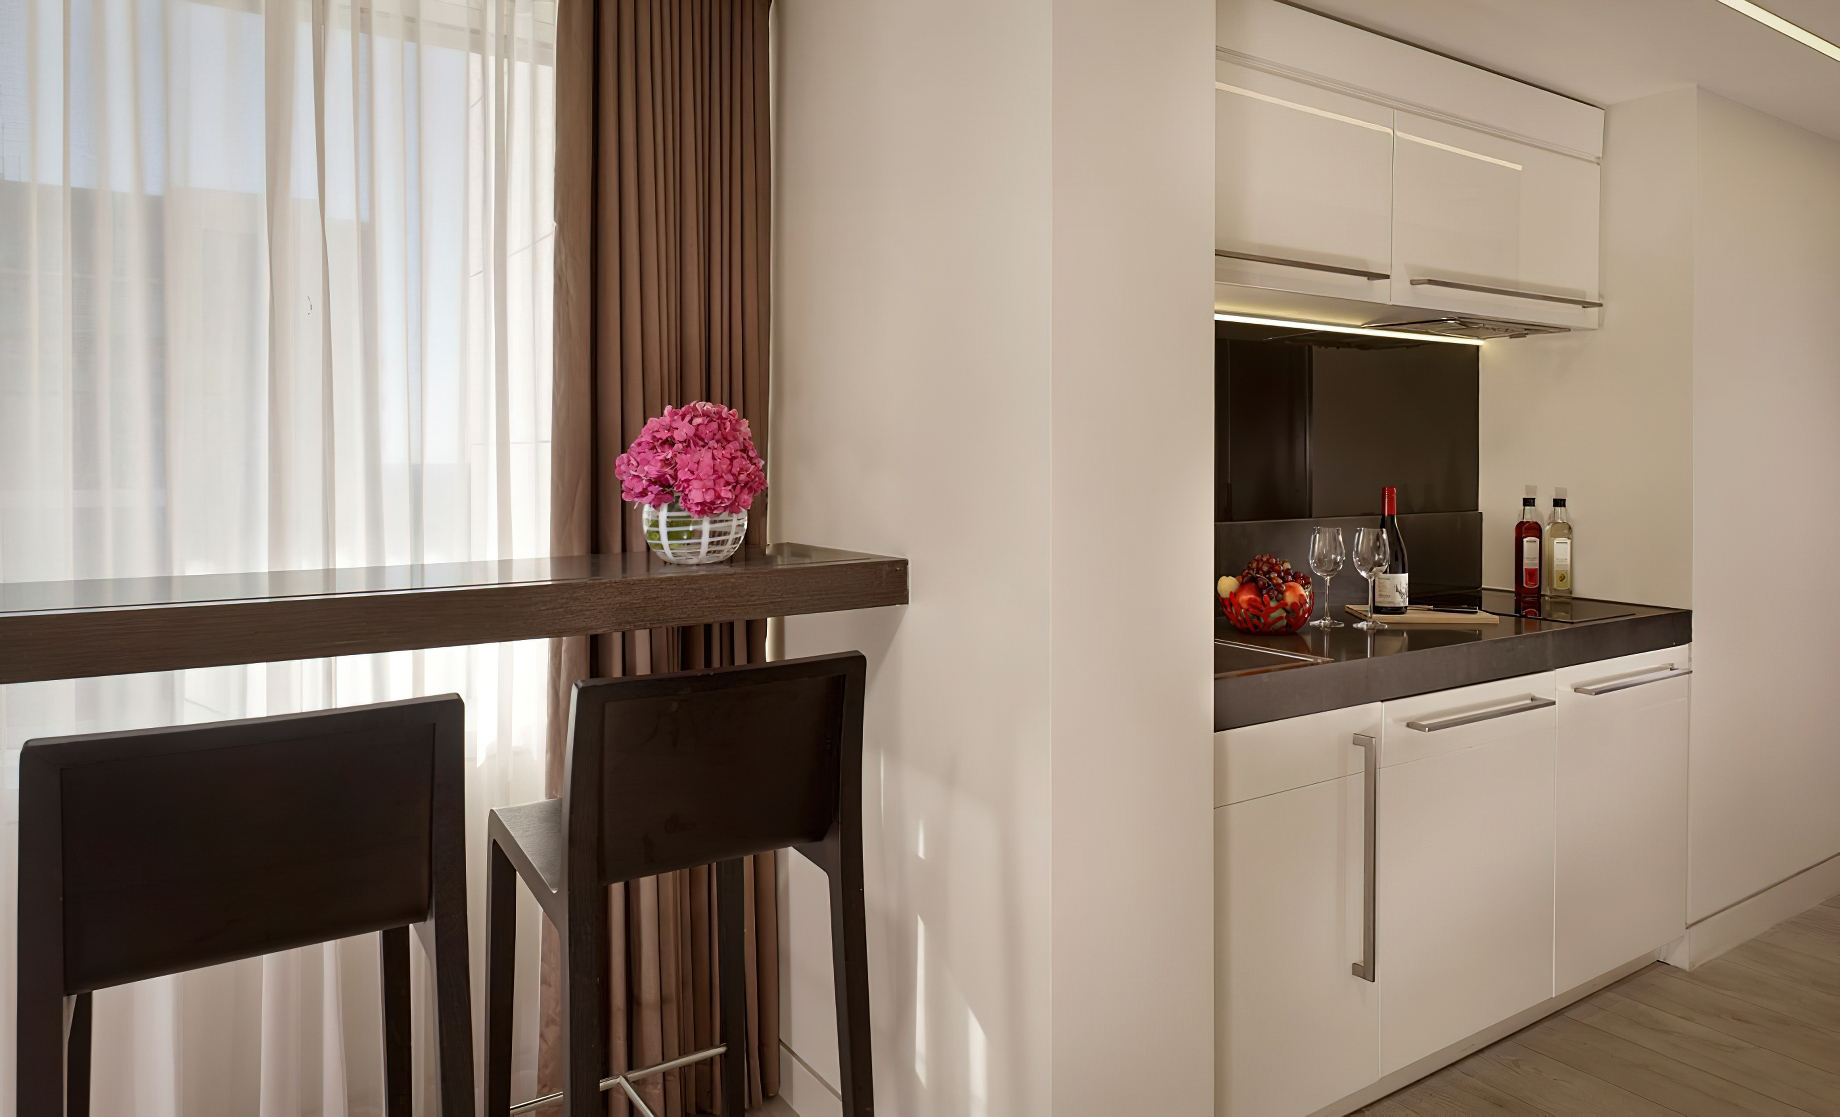 The Ritz-Carlton, Herzliya Hotel – Herzliya, Israel – Studio Room Kitchen